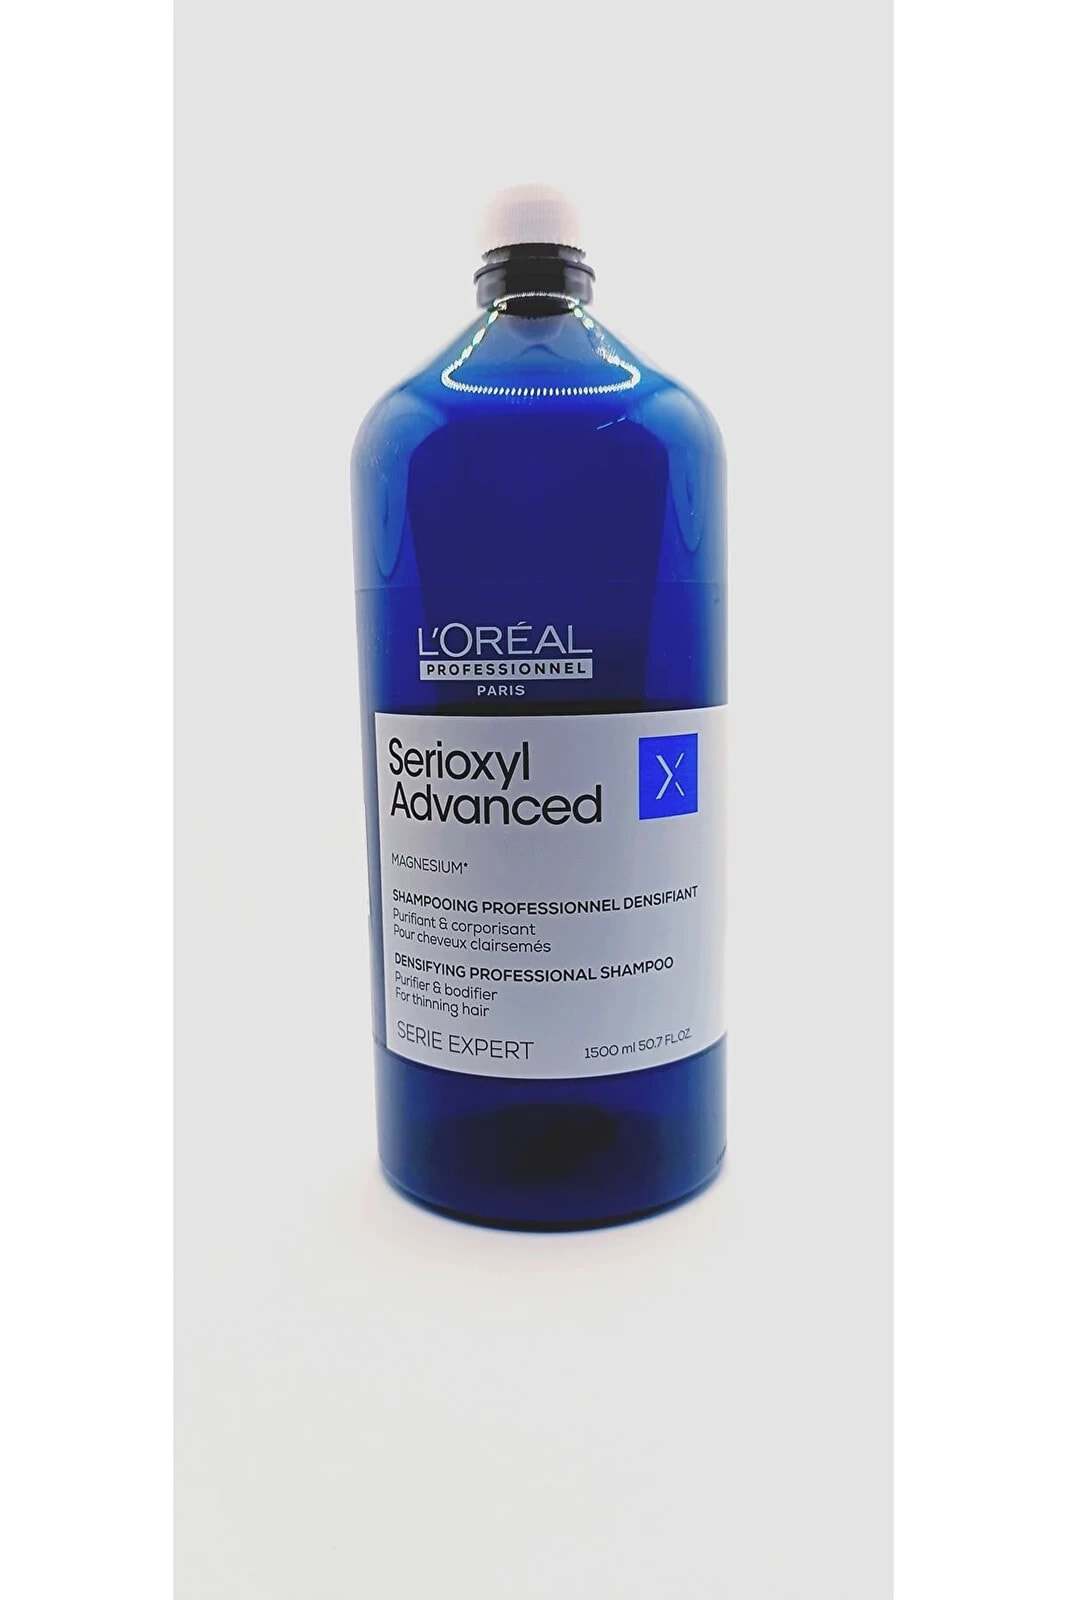 LOREAL Serioxyl Advanced Densifying Dökülerek İncelen Saçlar İçin Arındırıcı Şampuan 1500ml